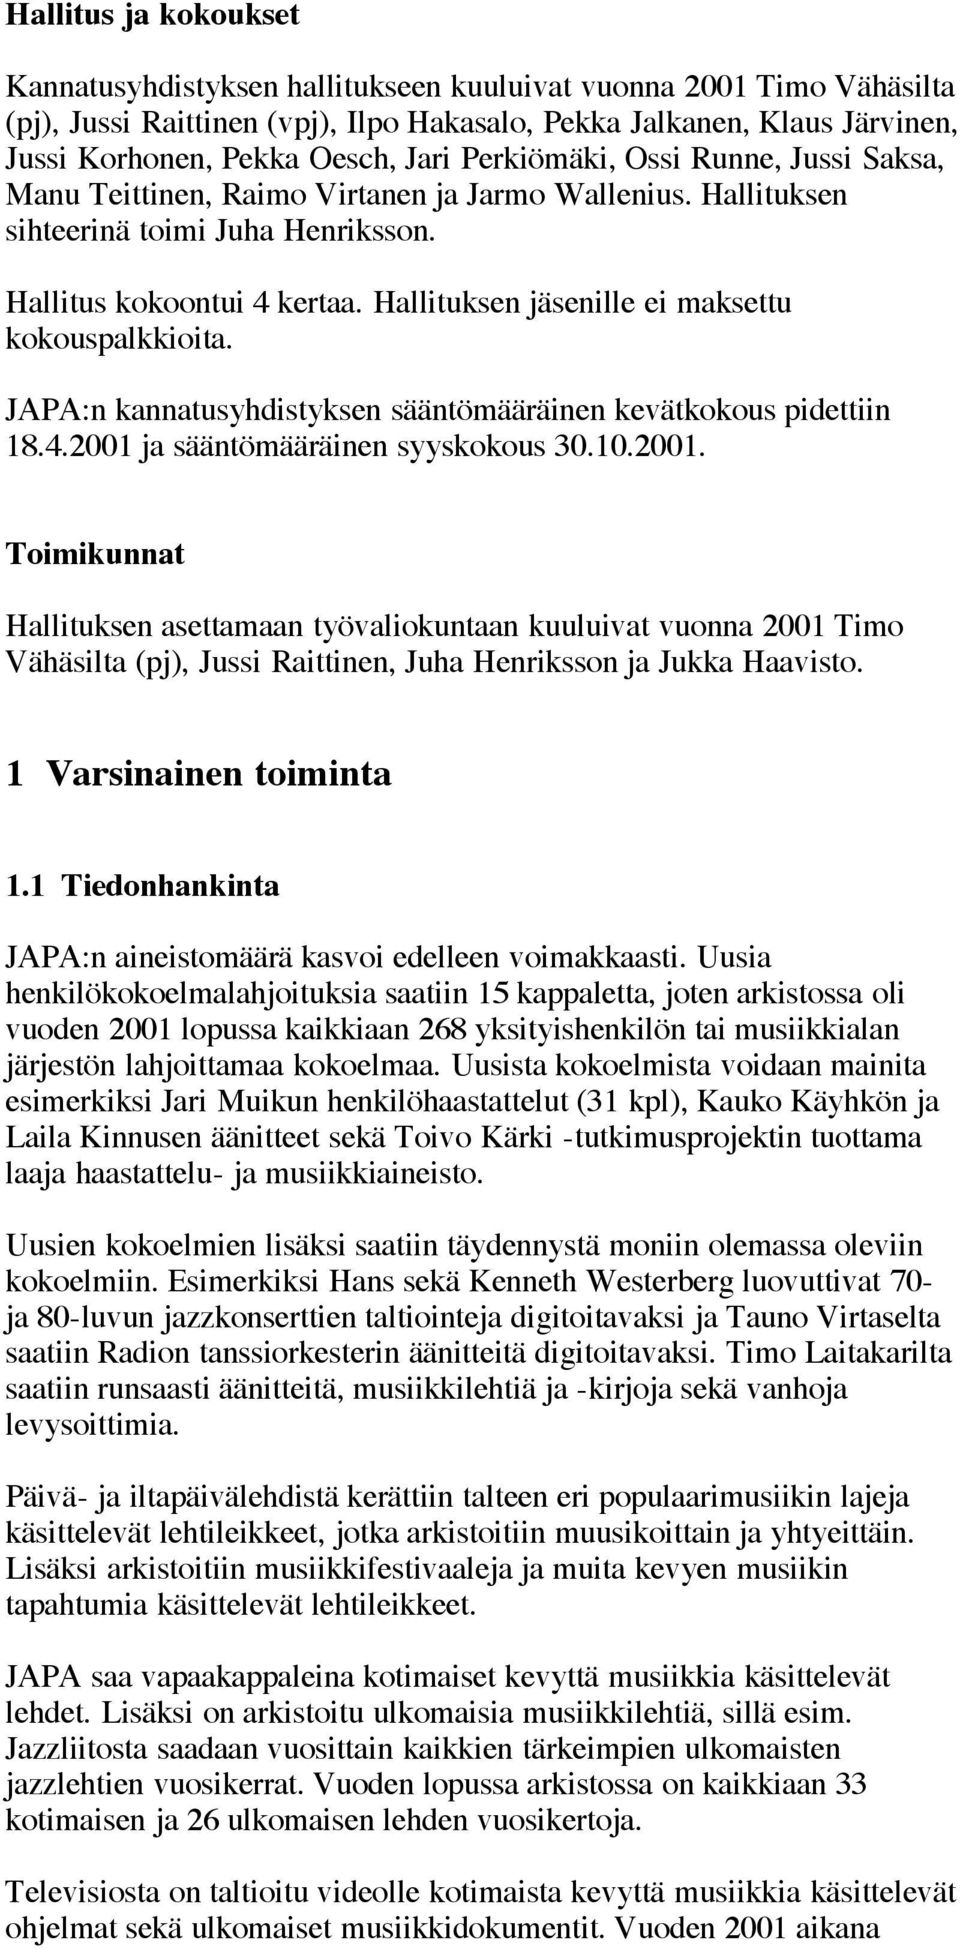 Hallituksen jäsenille ei maksettu kokouspalkkioita. JAPA:n kannatusyhdistyksen sääntömääräinen kevätkokous pidettiin 18.4.2001 